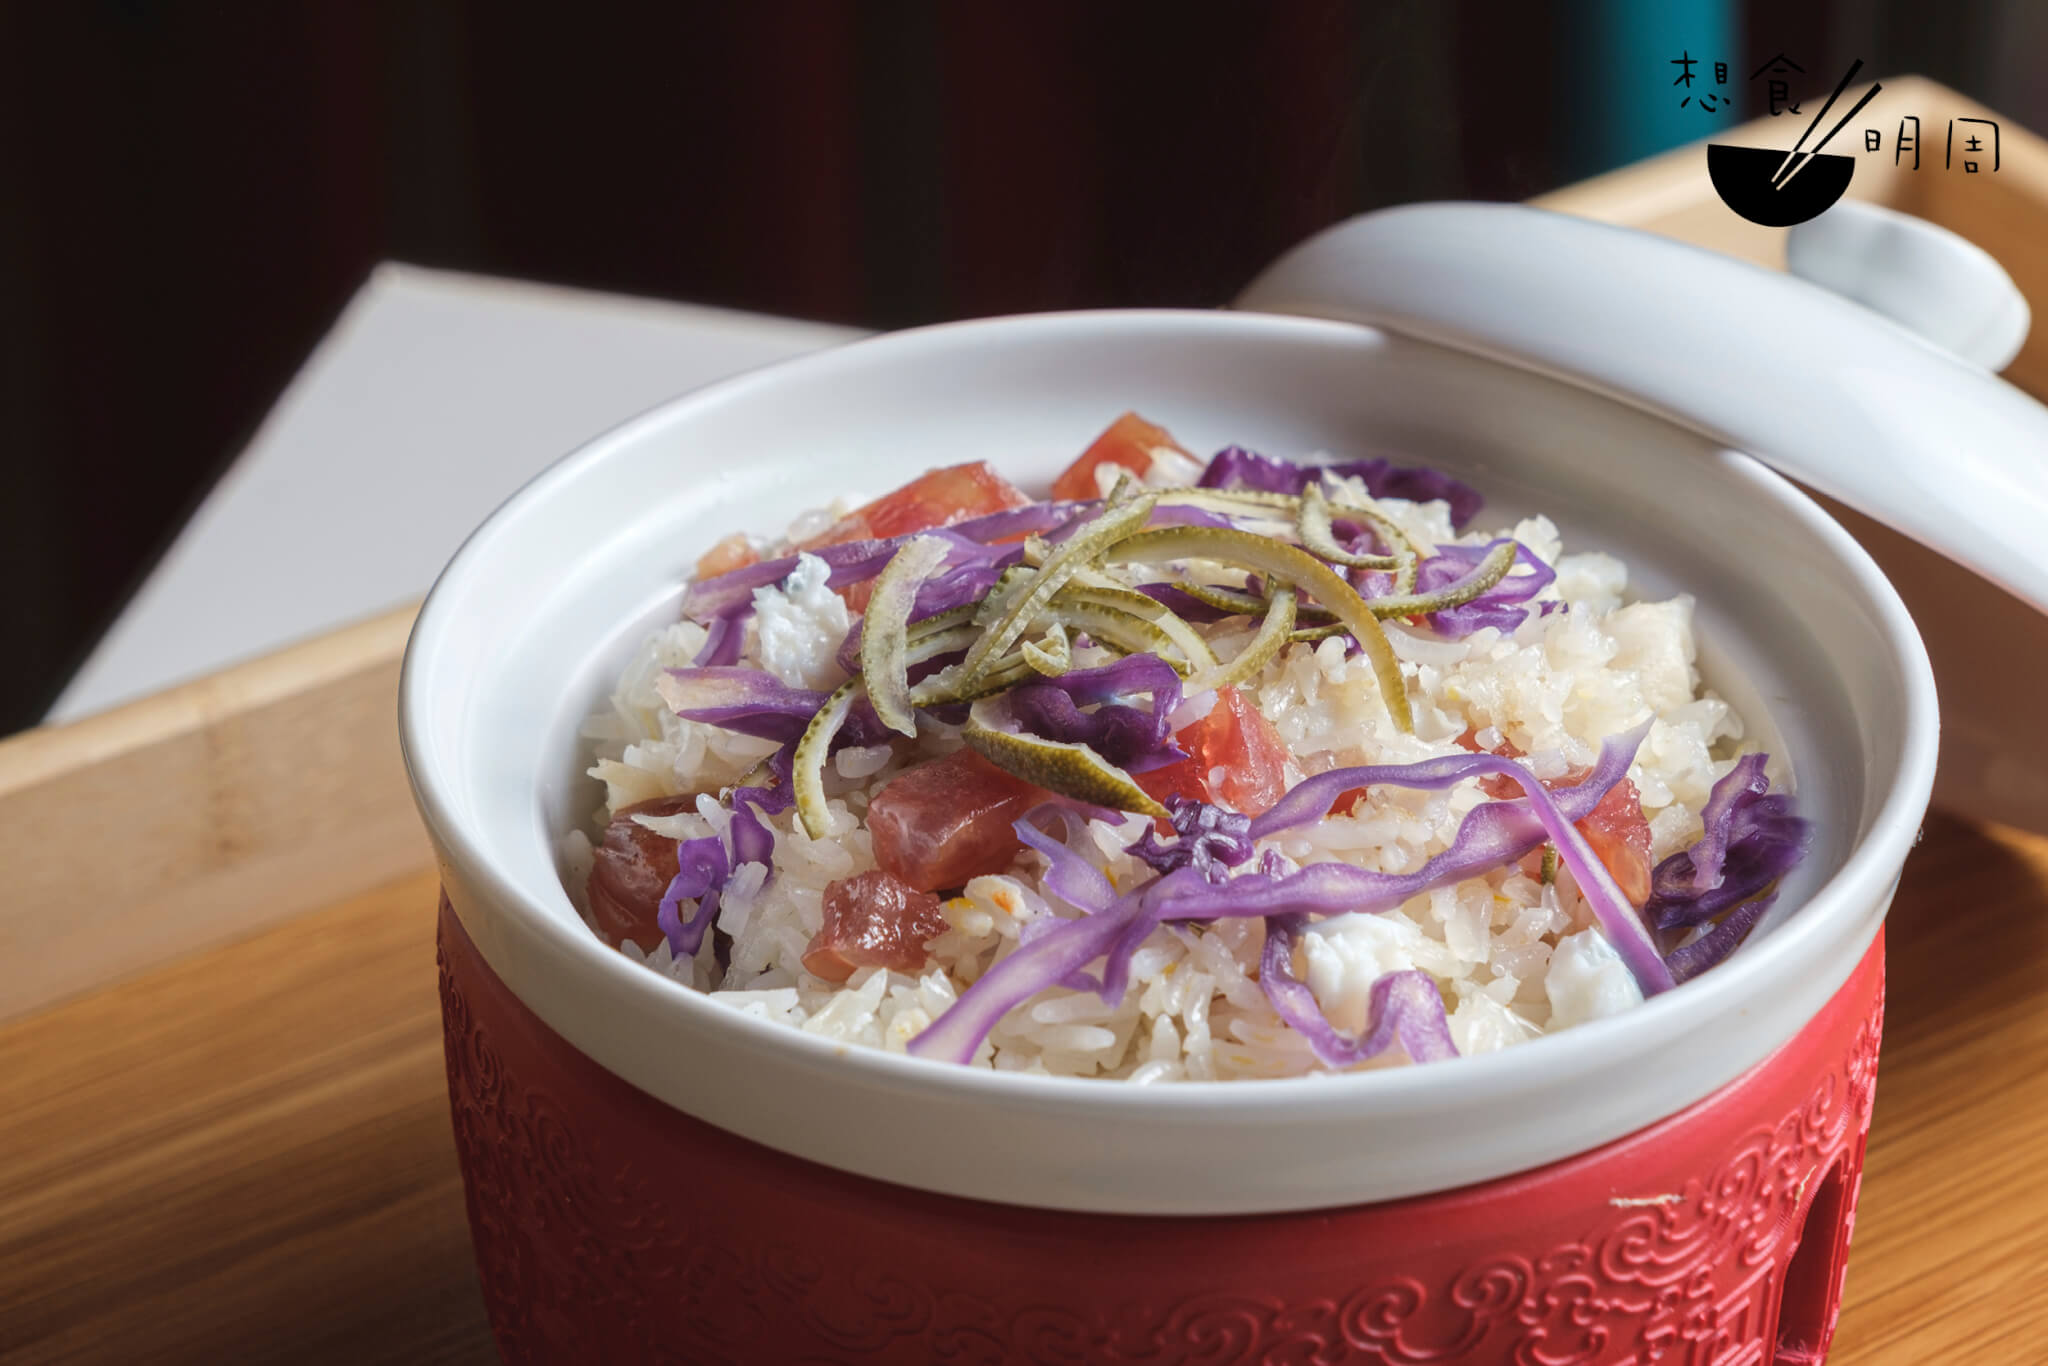 紫椰菜臘味粒蟹肉蛋白炒飯//蛇湯套餐的炒飯，加入了陳皮絲、紫椰菜，減低臘味的油膩感，是頗清爽的配搭。（連節瓜盅套餐價$149）